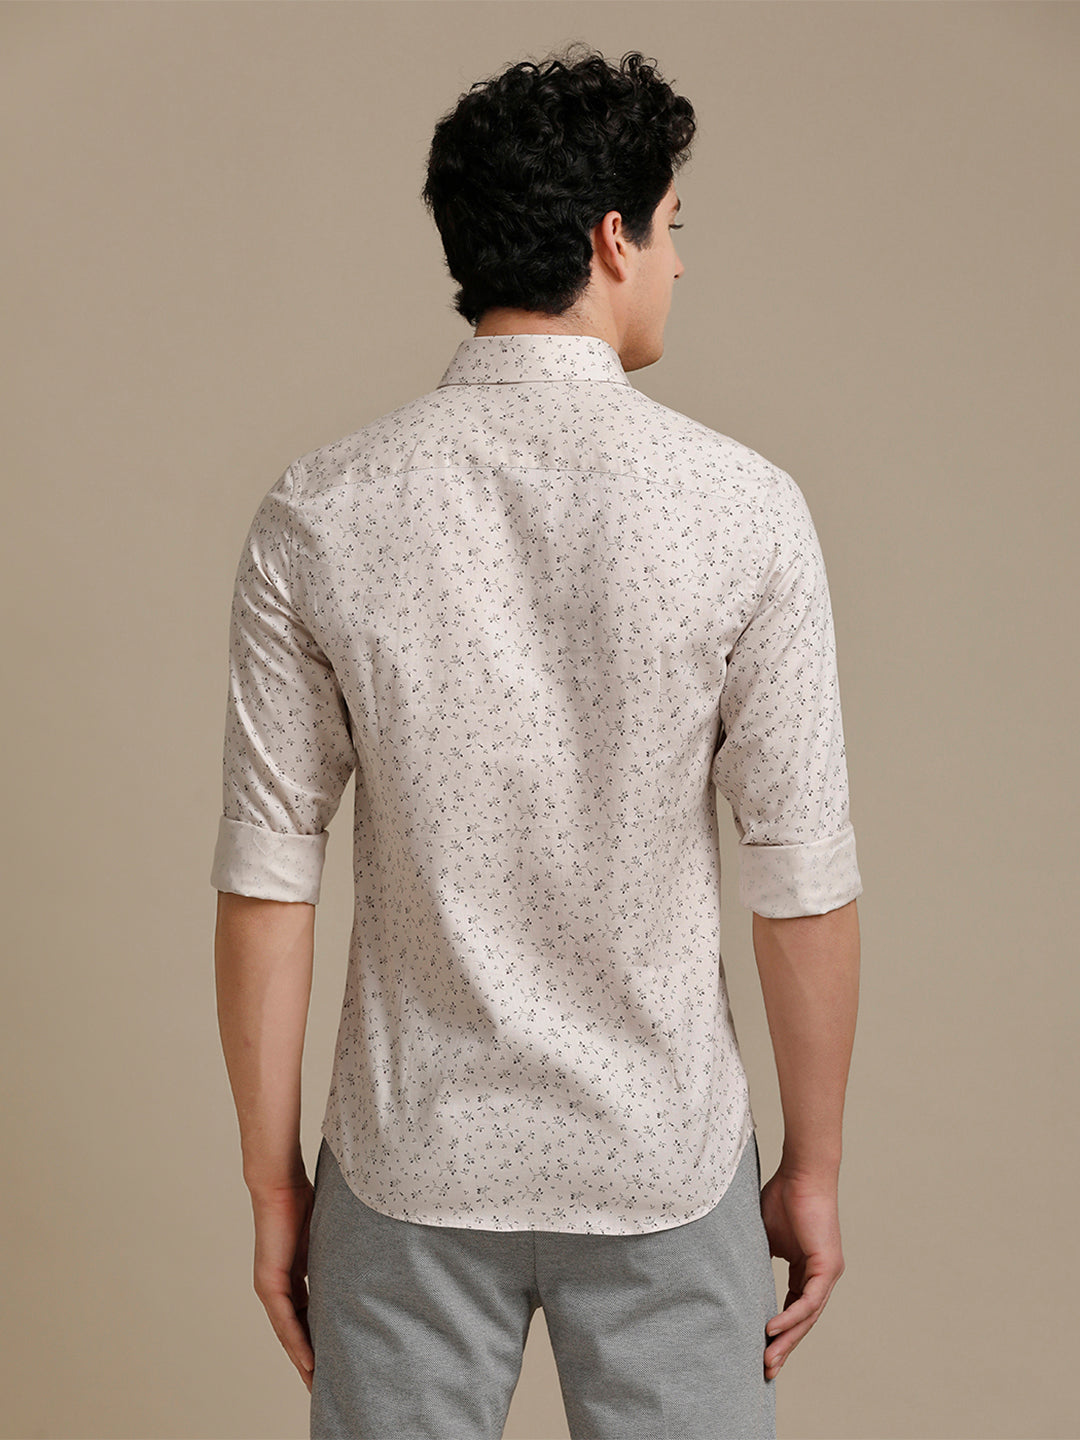 Aldeno Mens Slim Fit Floral Aop Cream/Brown Casual Cotton Shirt (BEPIT)